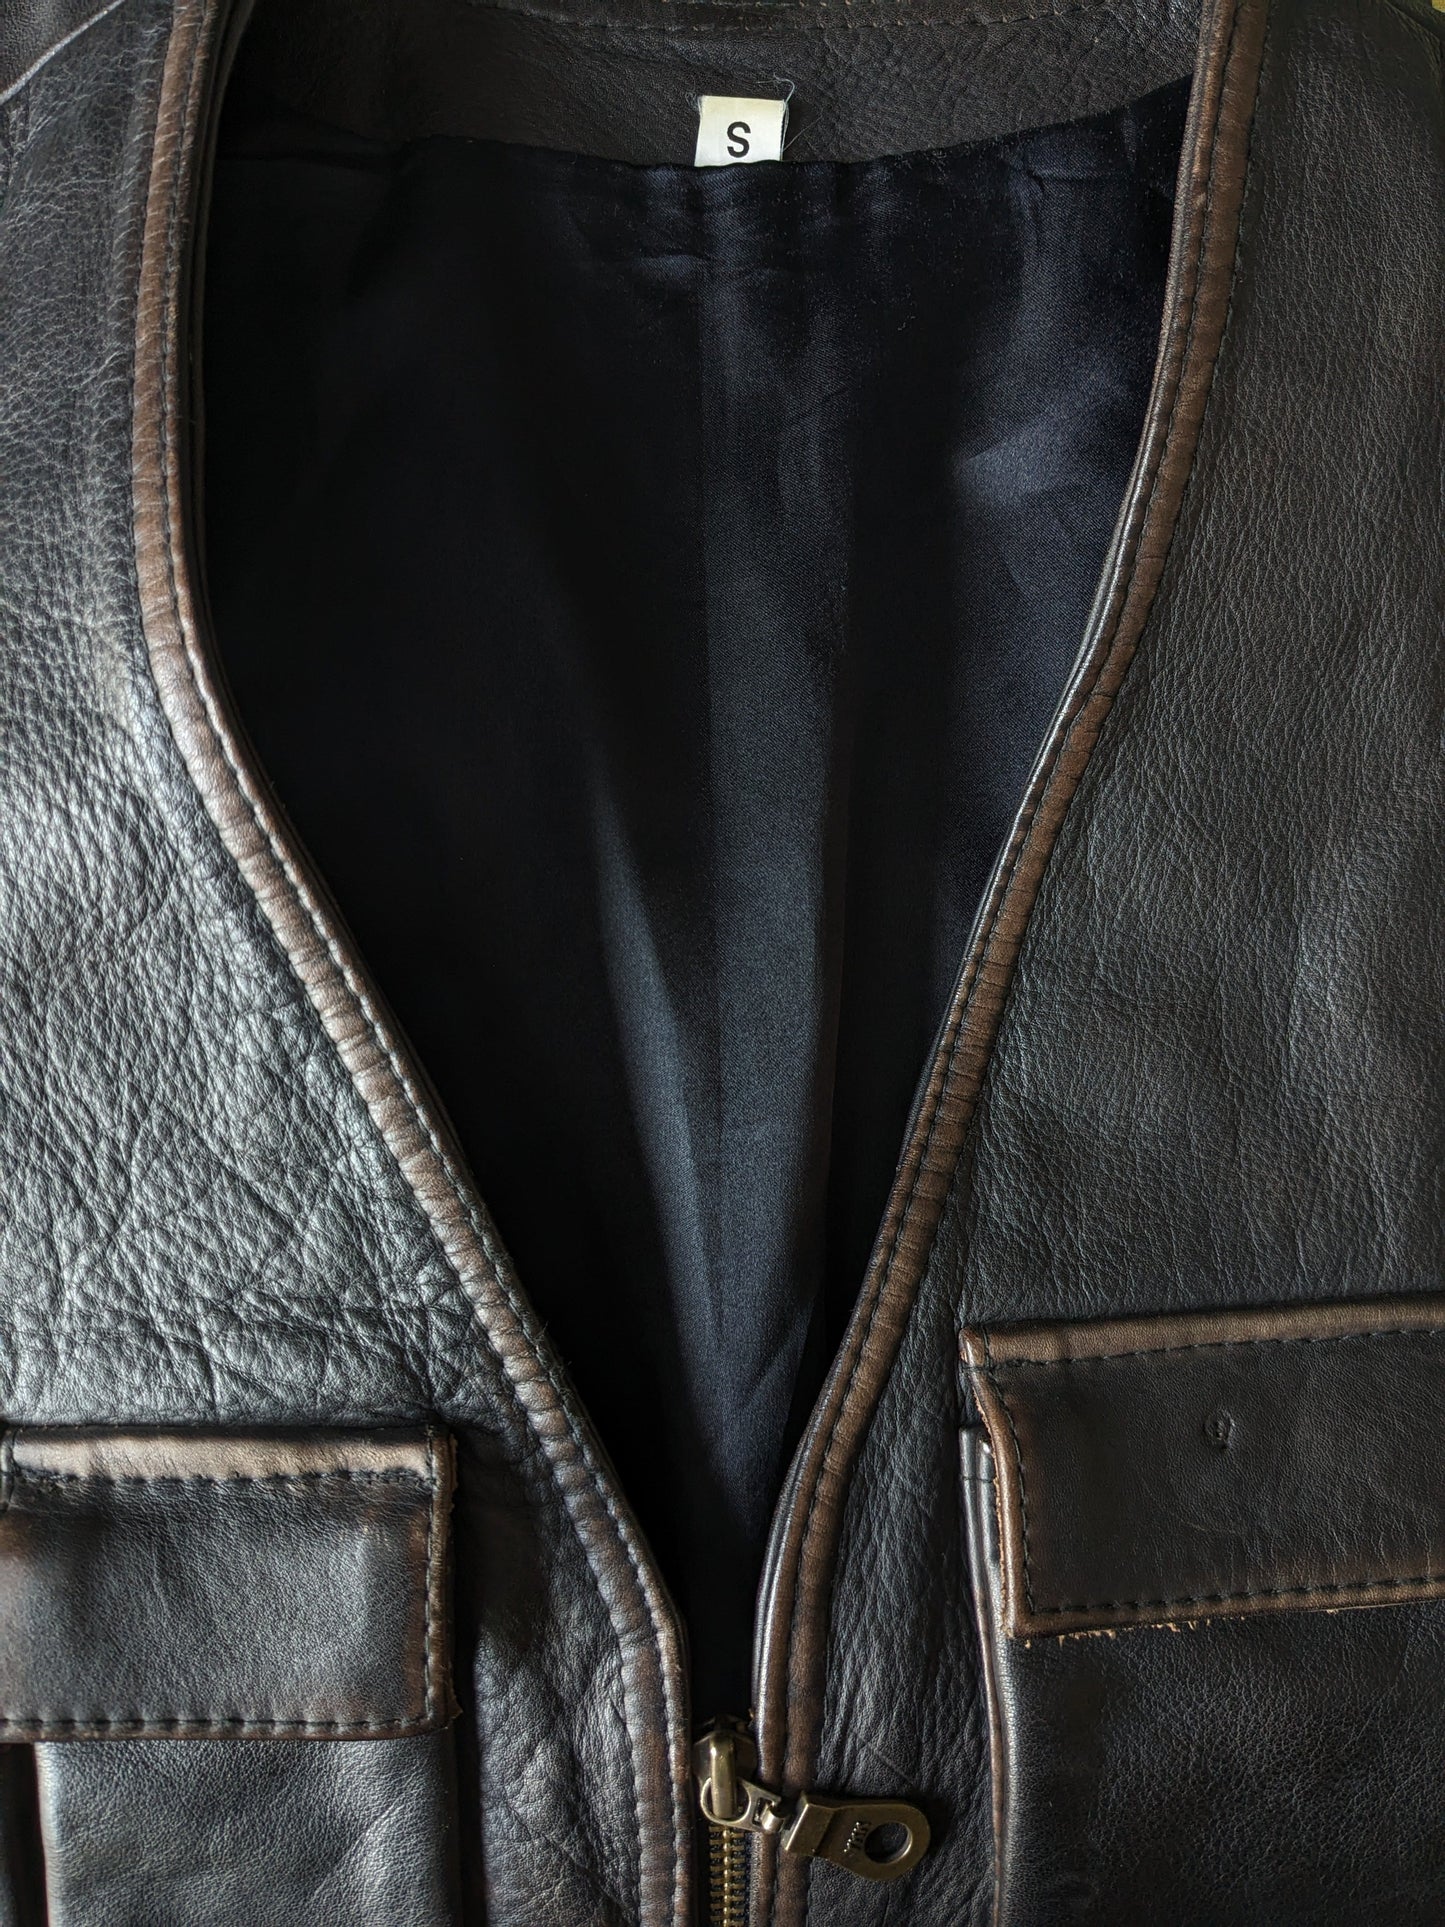 Calentador de cuerpo de cuero de los años 90 vintage con muchas bolsas y 2 bolsillos internos. Marron oscuro. Tamaño S / M.